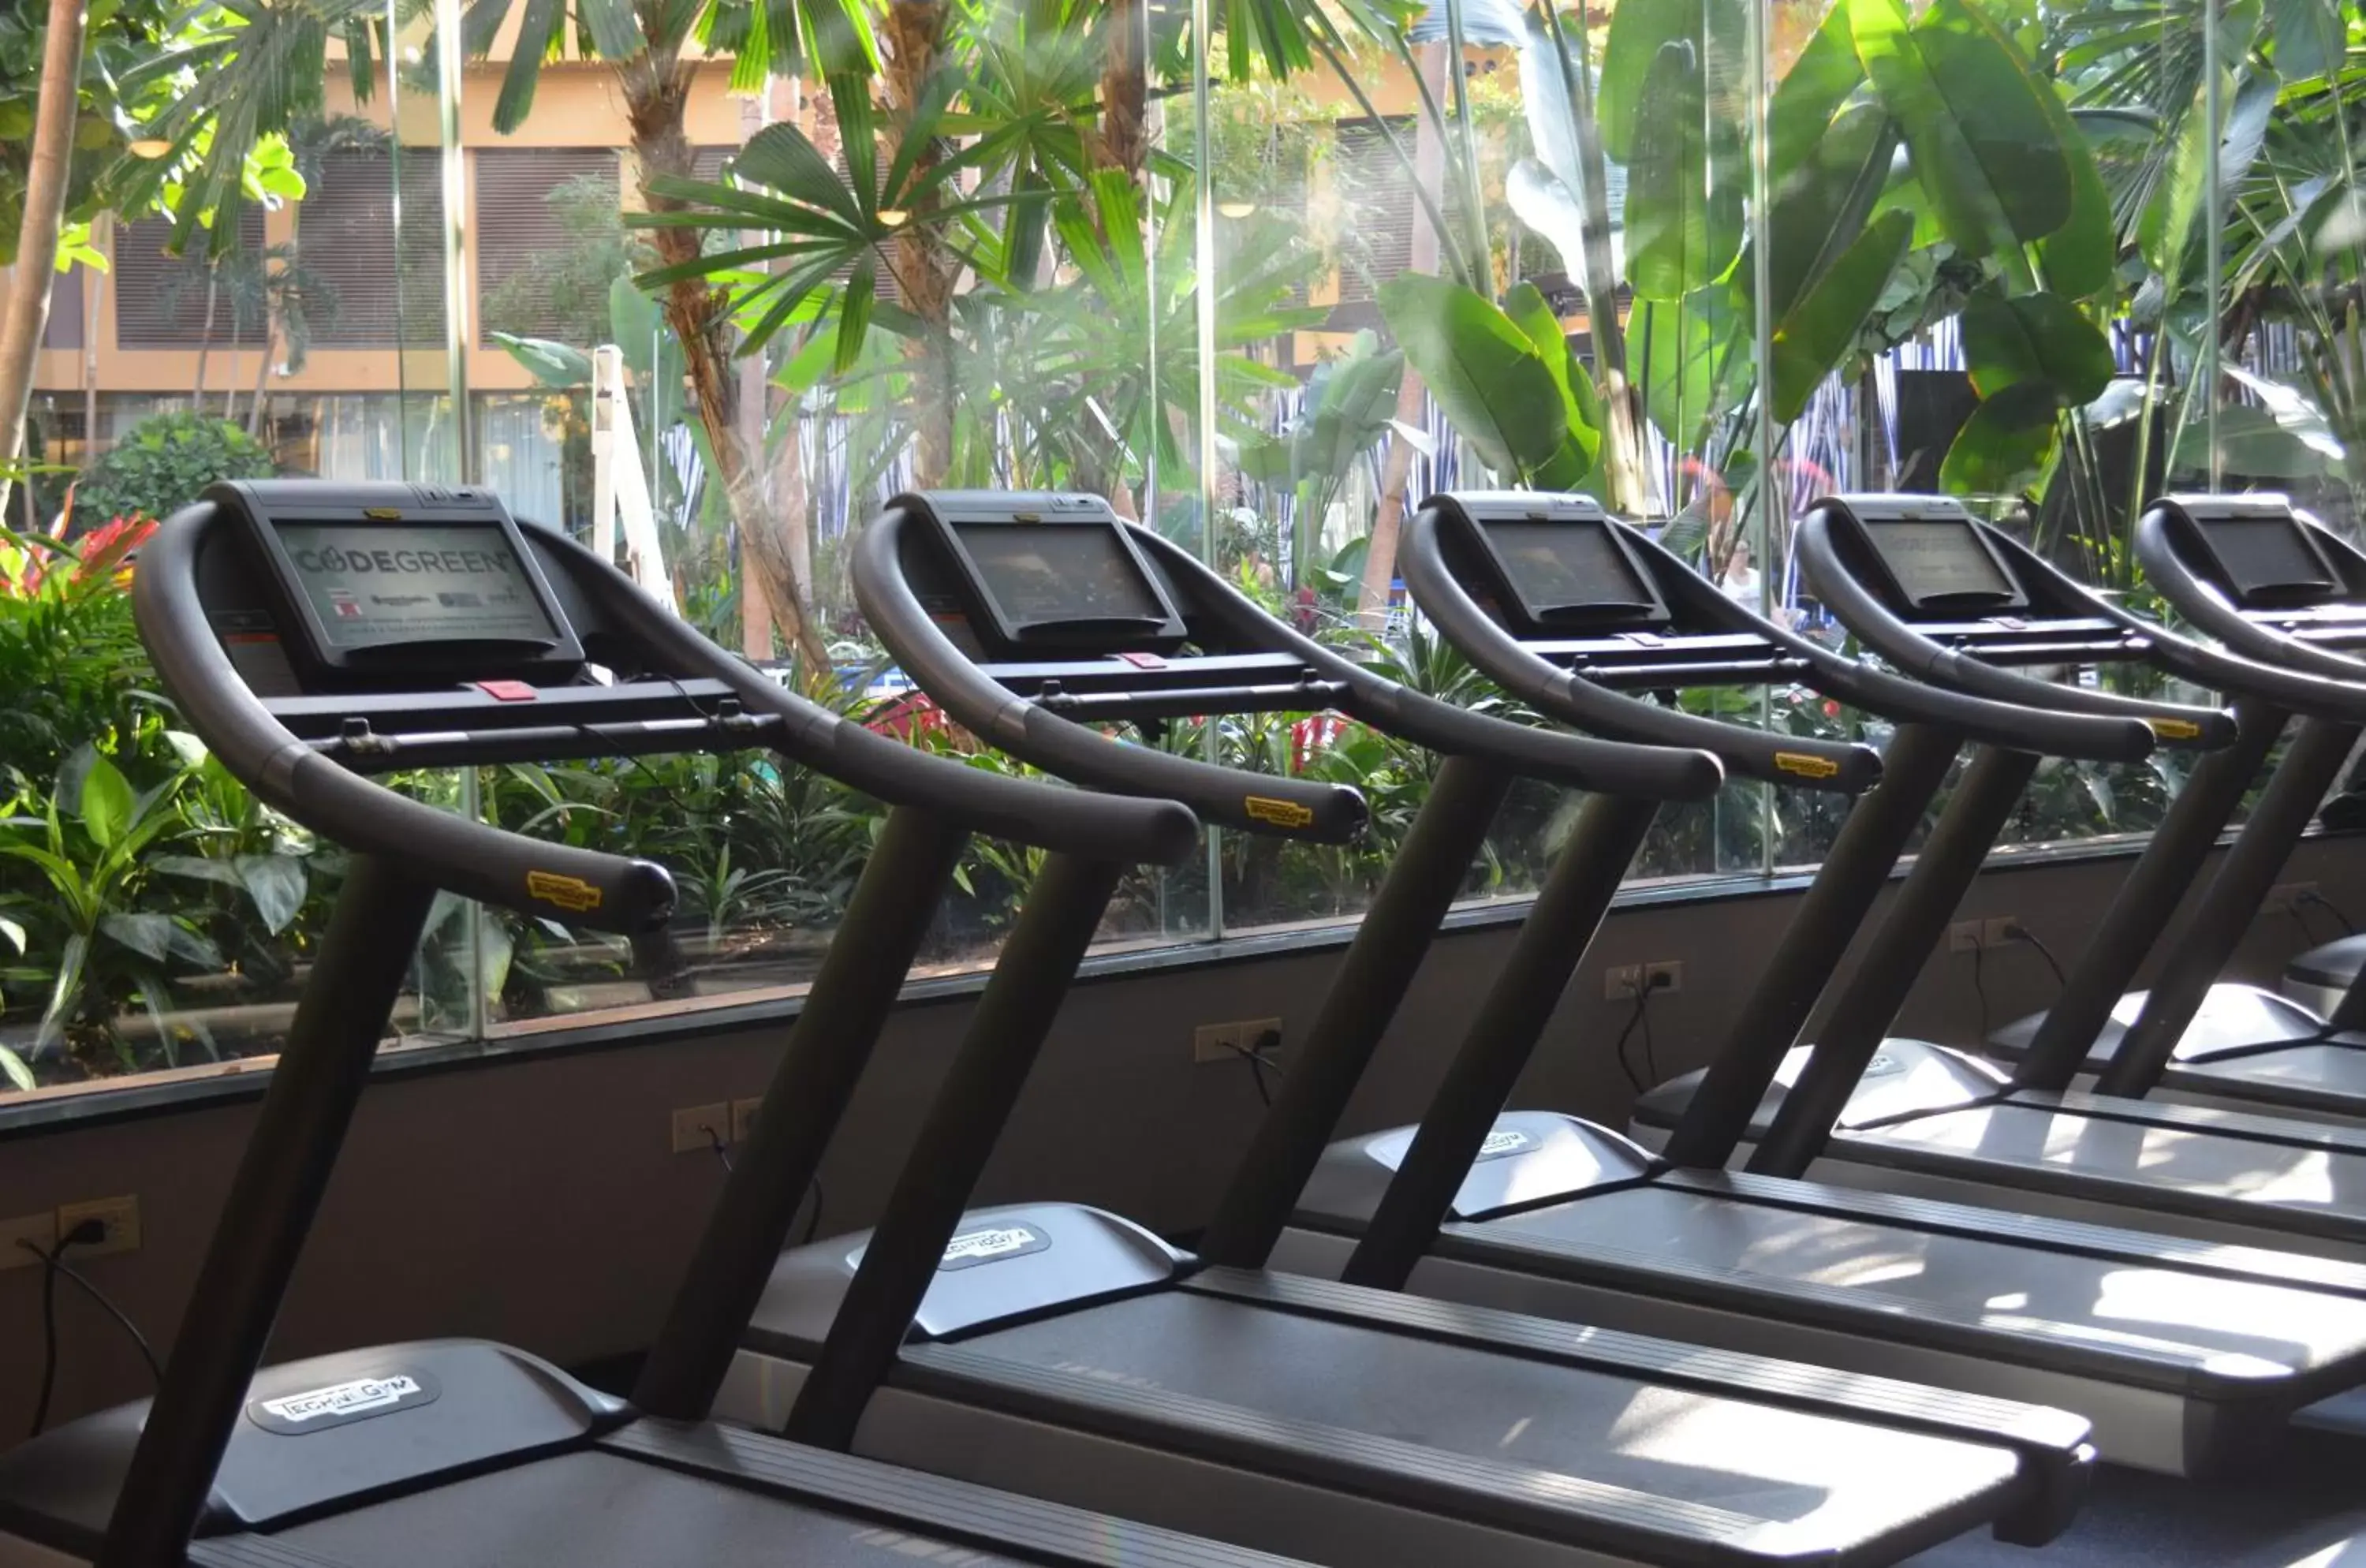 Fitness centre/facilities, Fitness Center/Facilities in Harrah's Resort Atlantic City Hotel & Casino